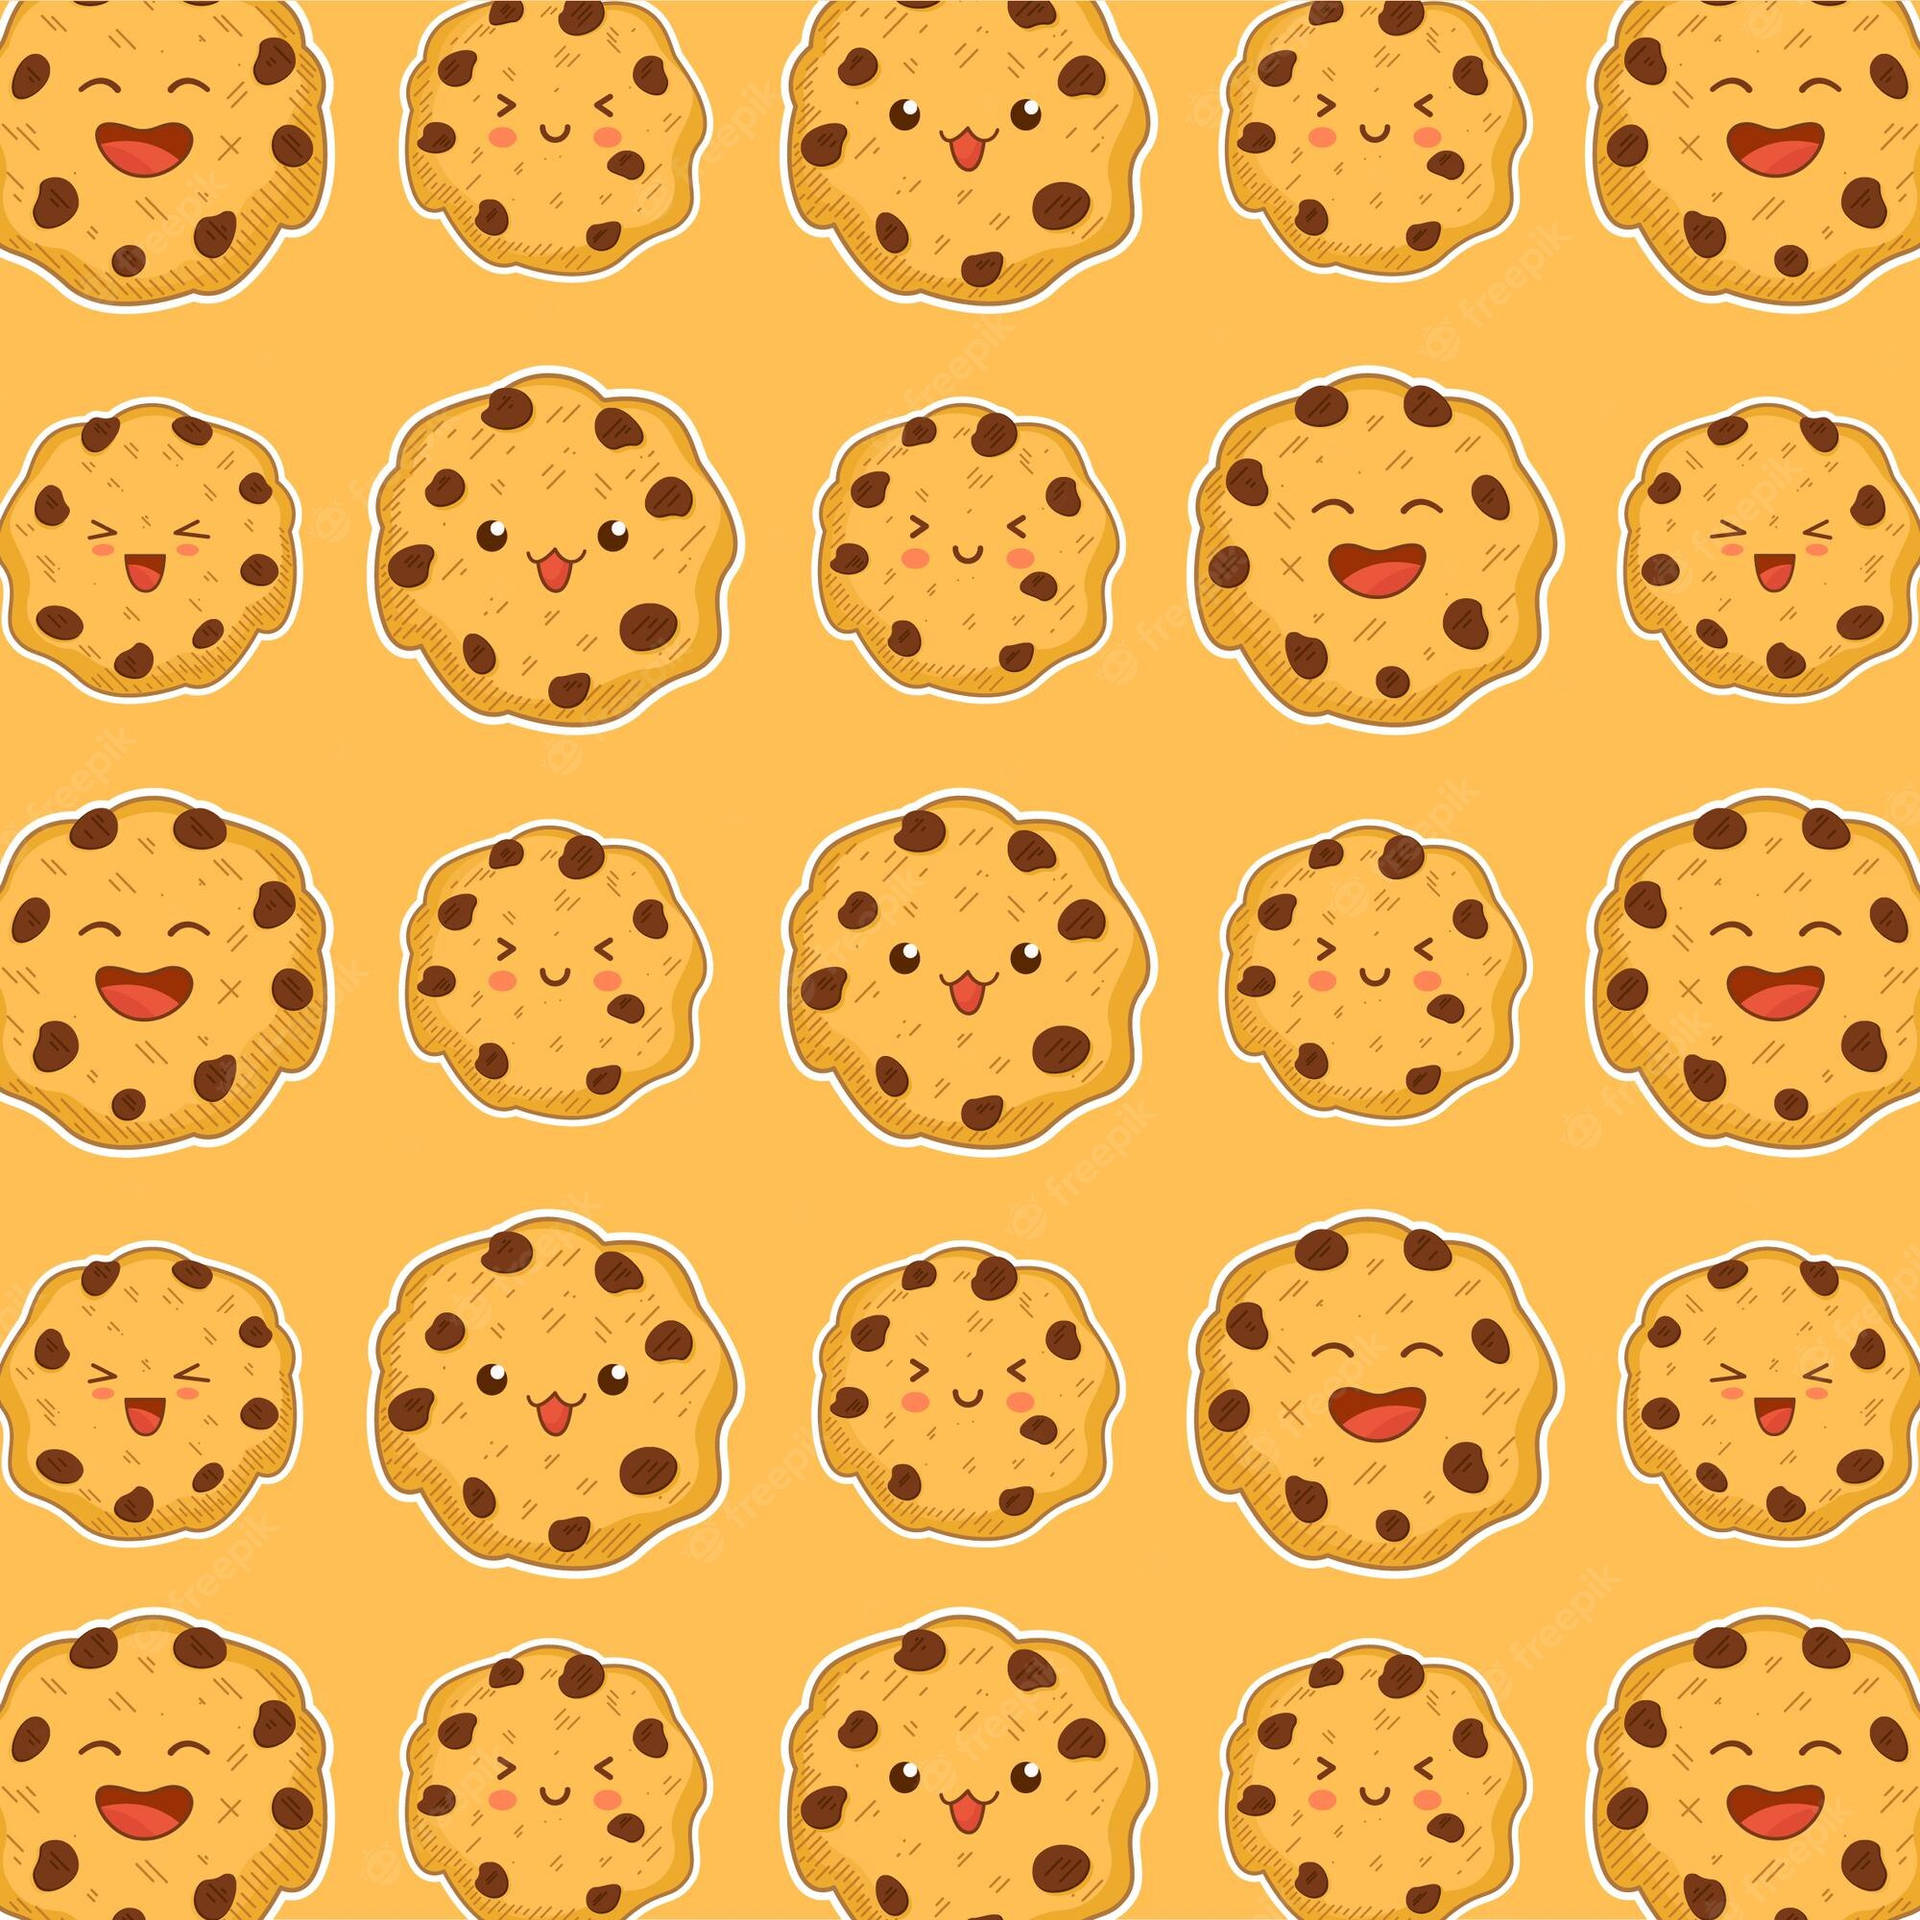 Einmuster Aus Keksen Mit Lächelnden Gesichtern Auf Einem Orangefarbenen Hintergrund. Wallpaper